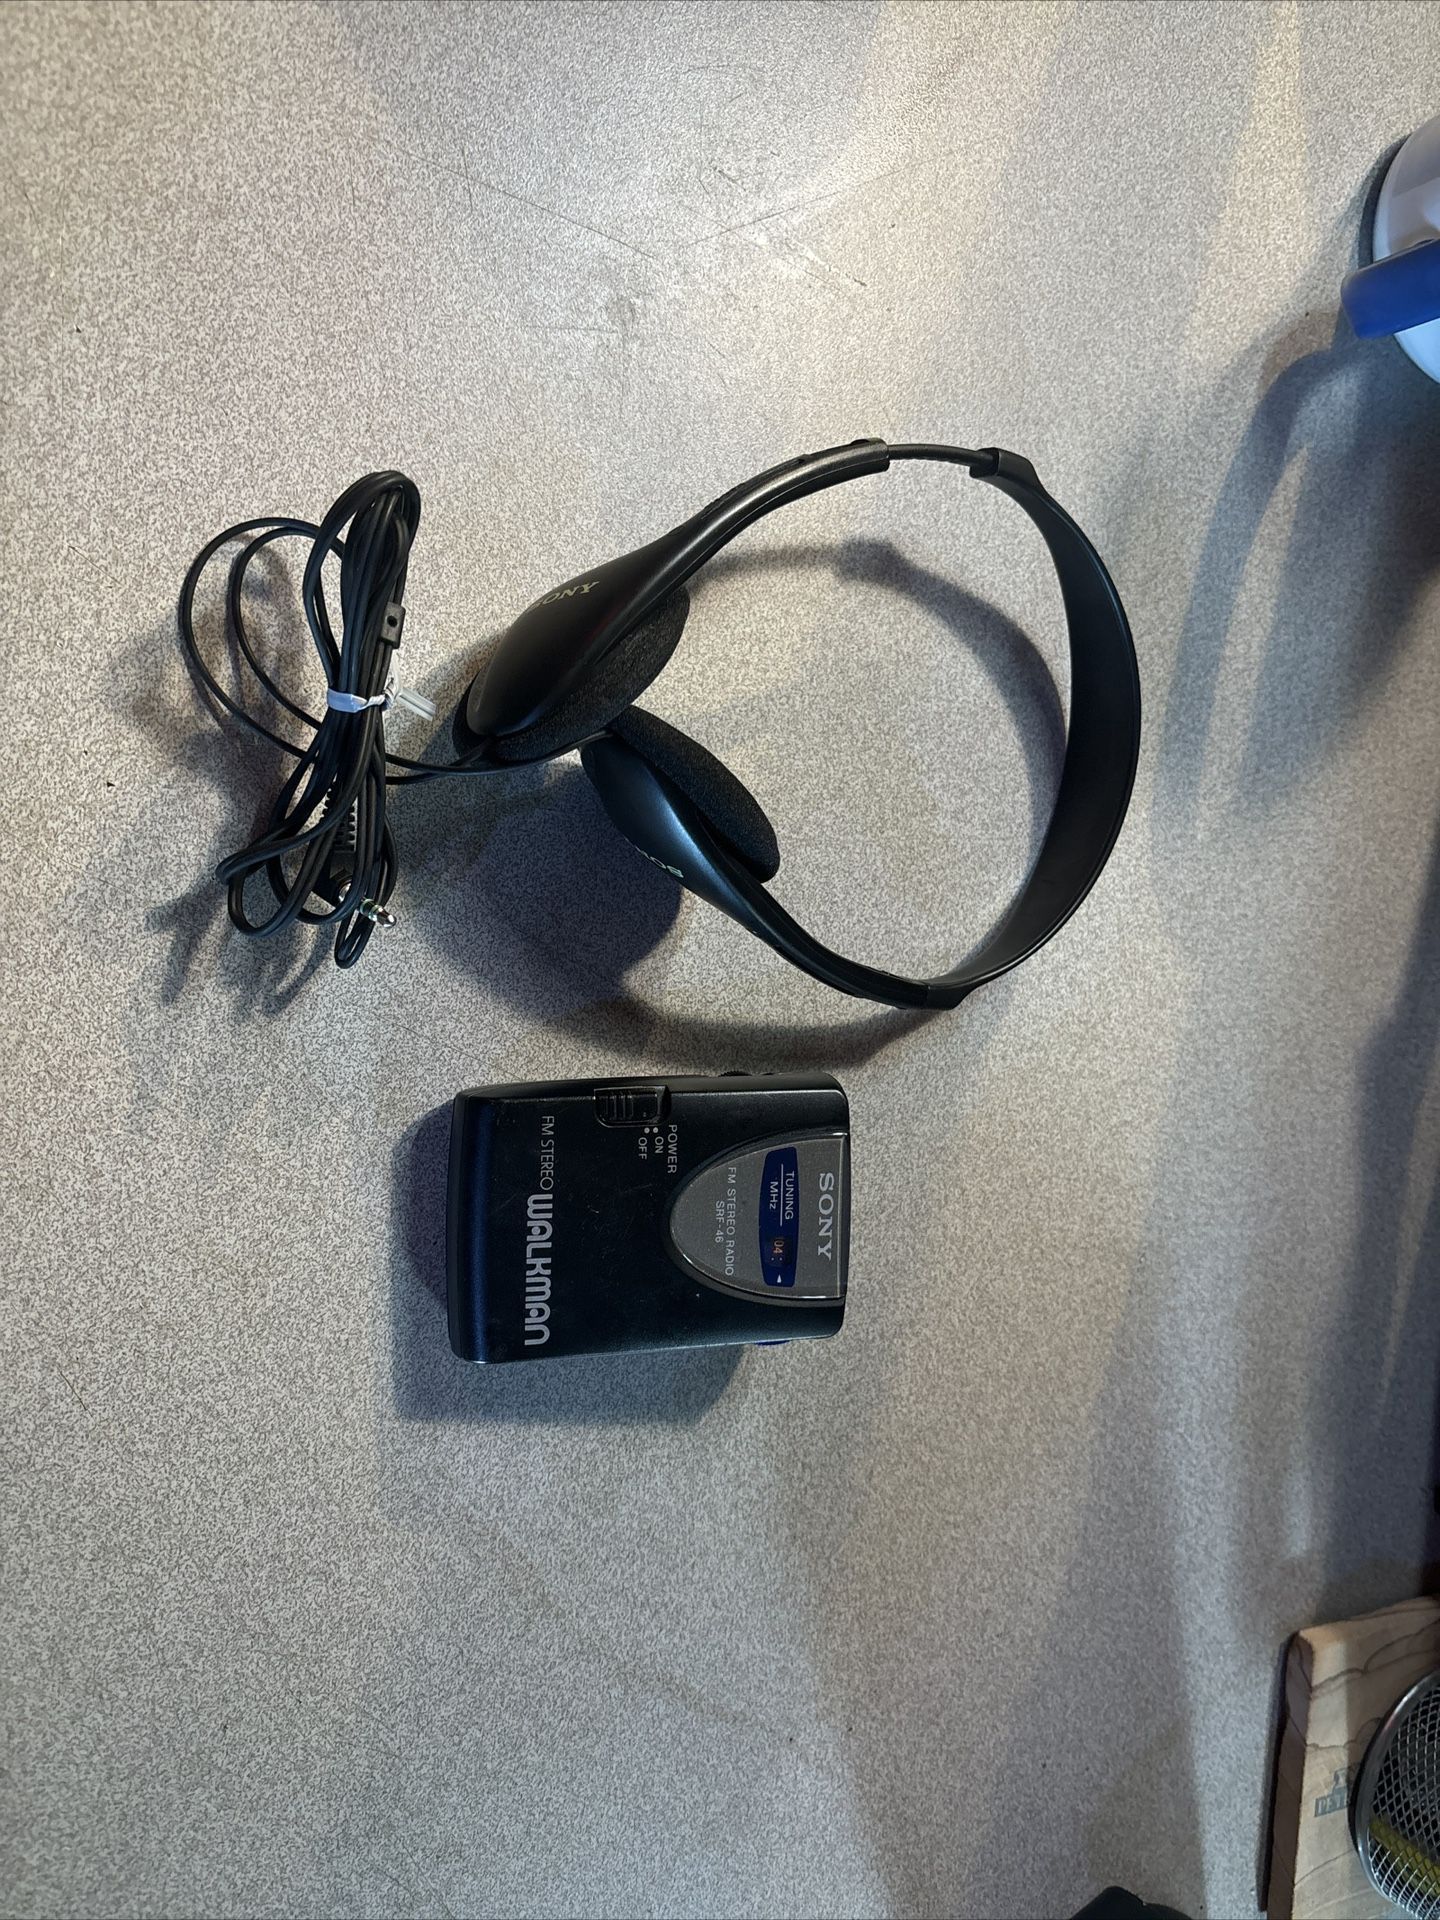 SONY-SRF-46 WALKMAN FM STEREO RADIO w/ Headphones Sony MDR-210- Works